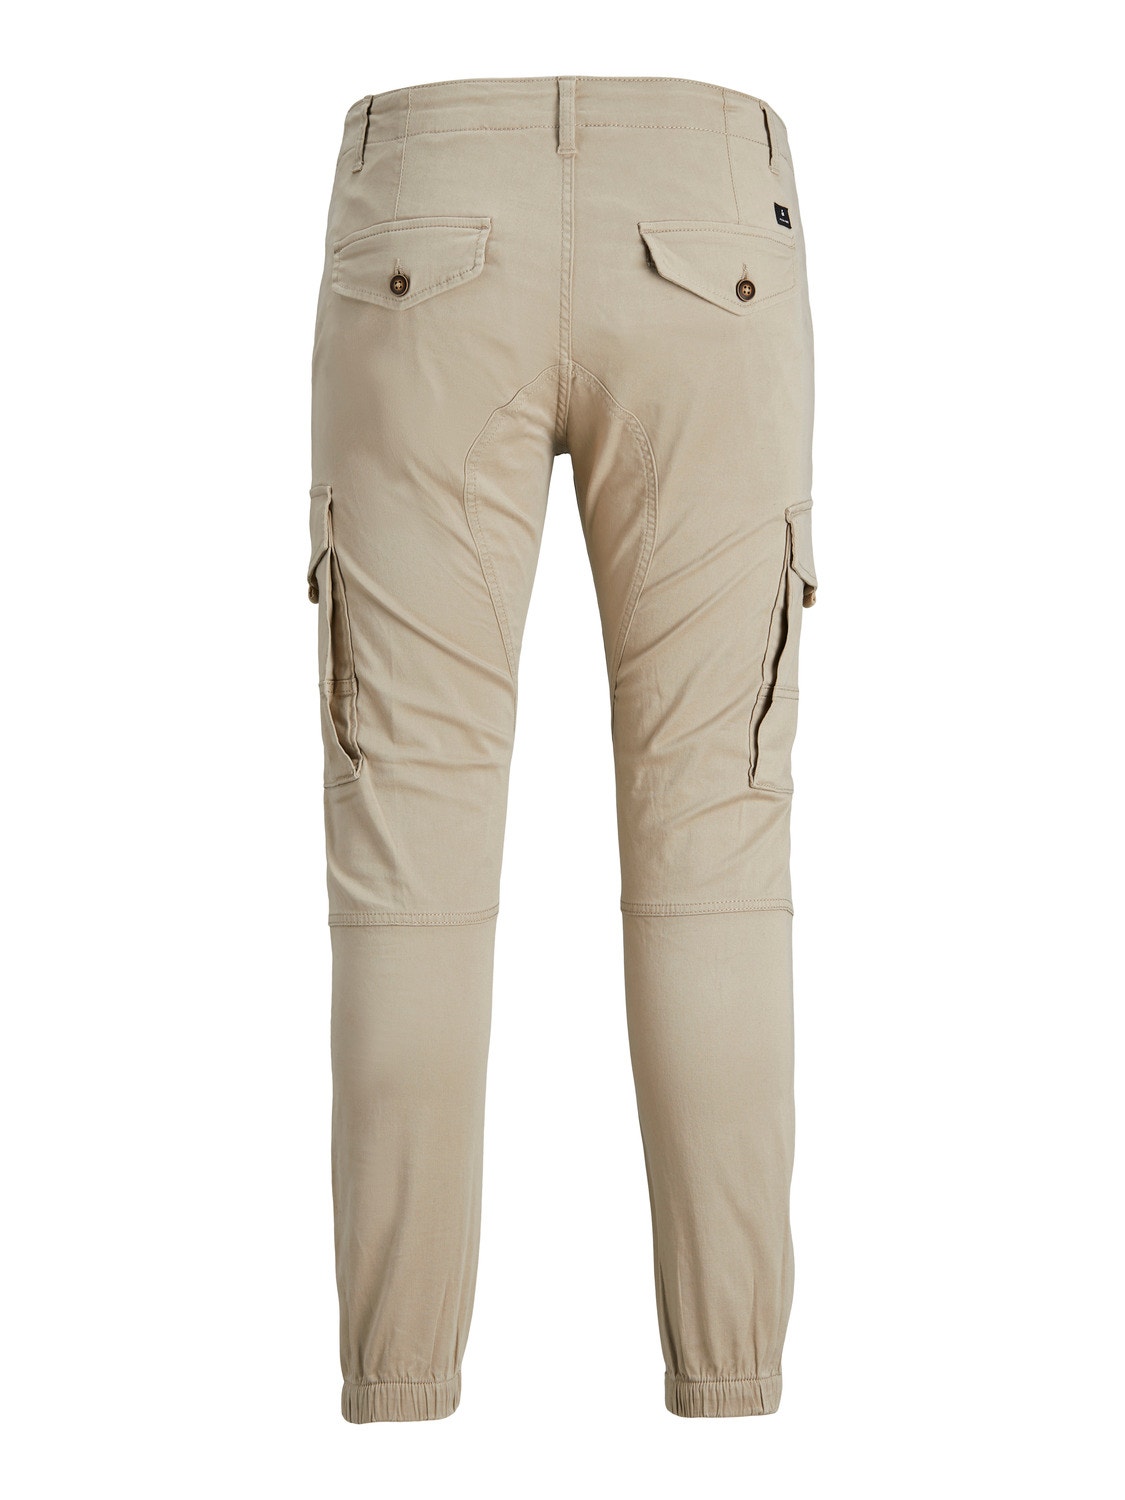 Jack & Jones Slim Fit Cargo trousers -Crockery - 12193754